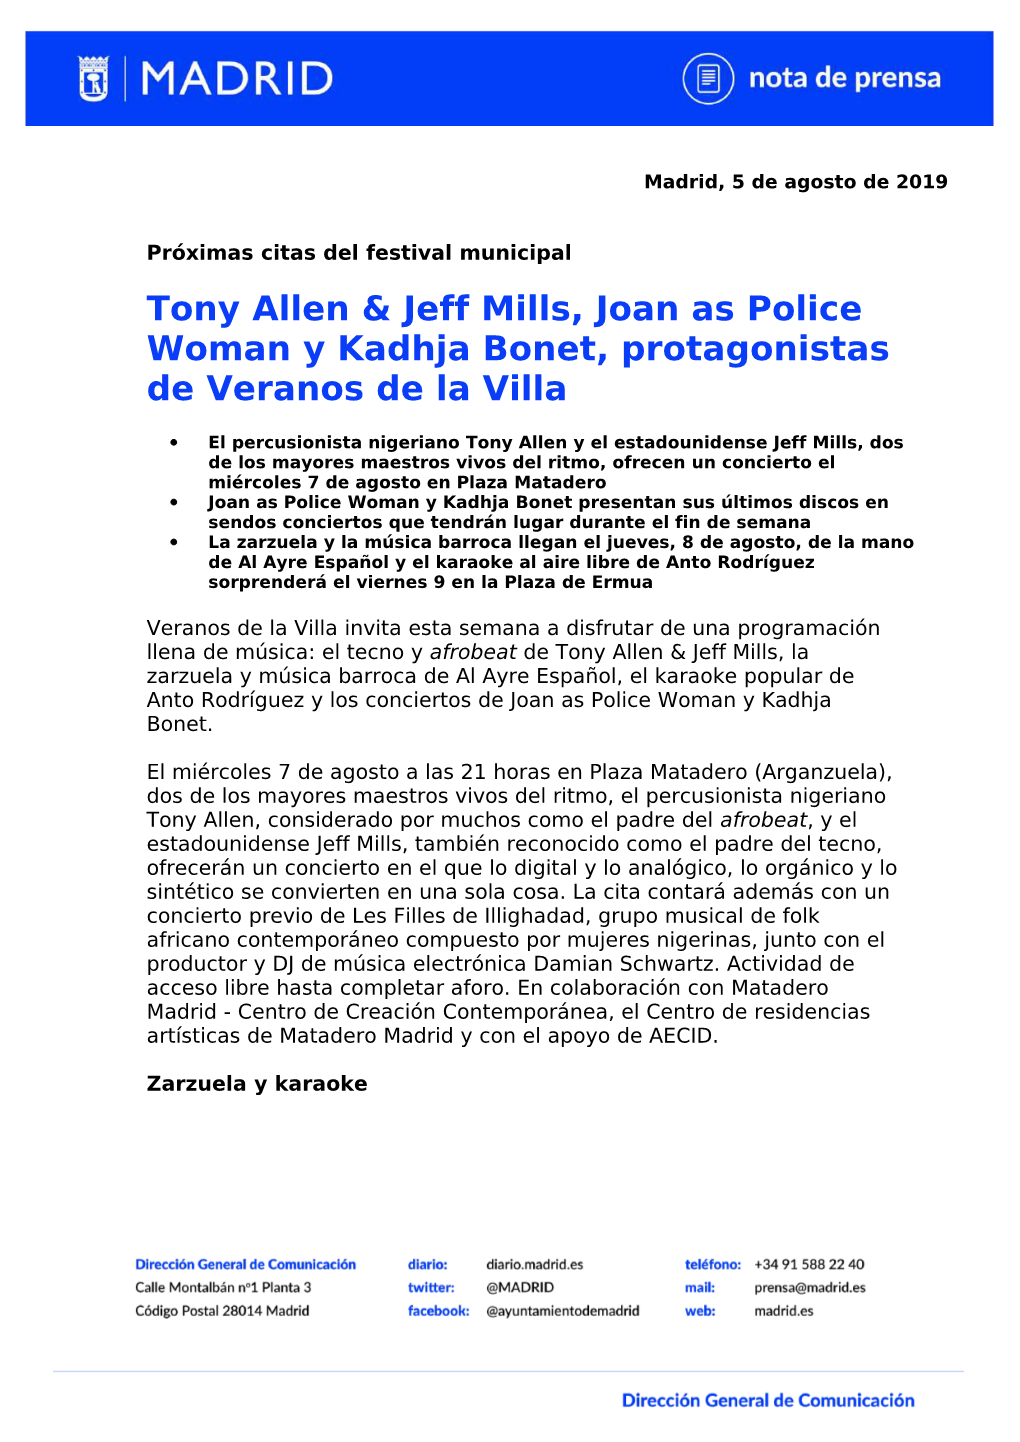 Tony Allen & Jeff Mills, Joan As Police Woman Y Kadhja Bonet